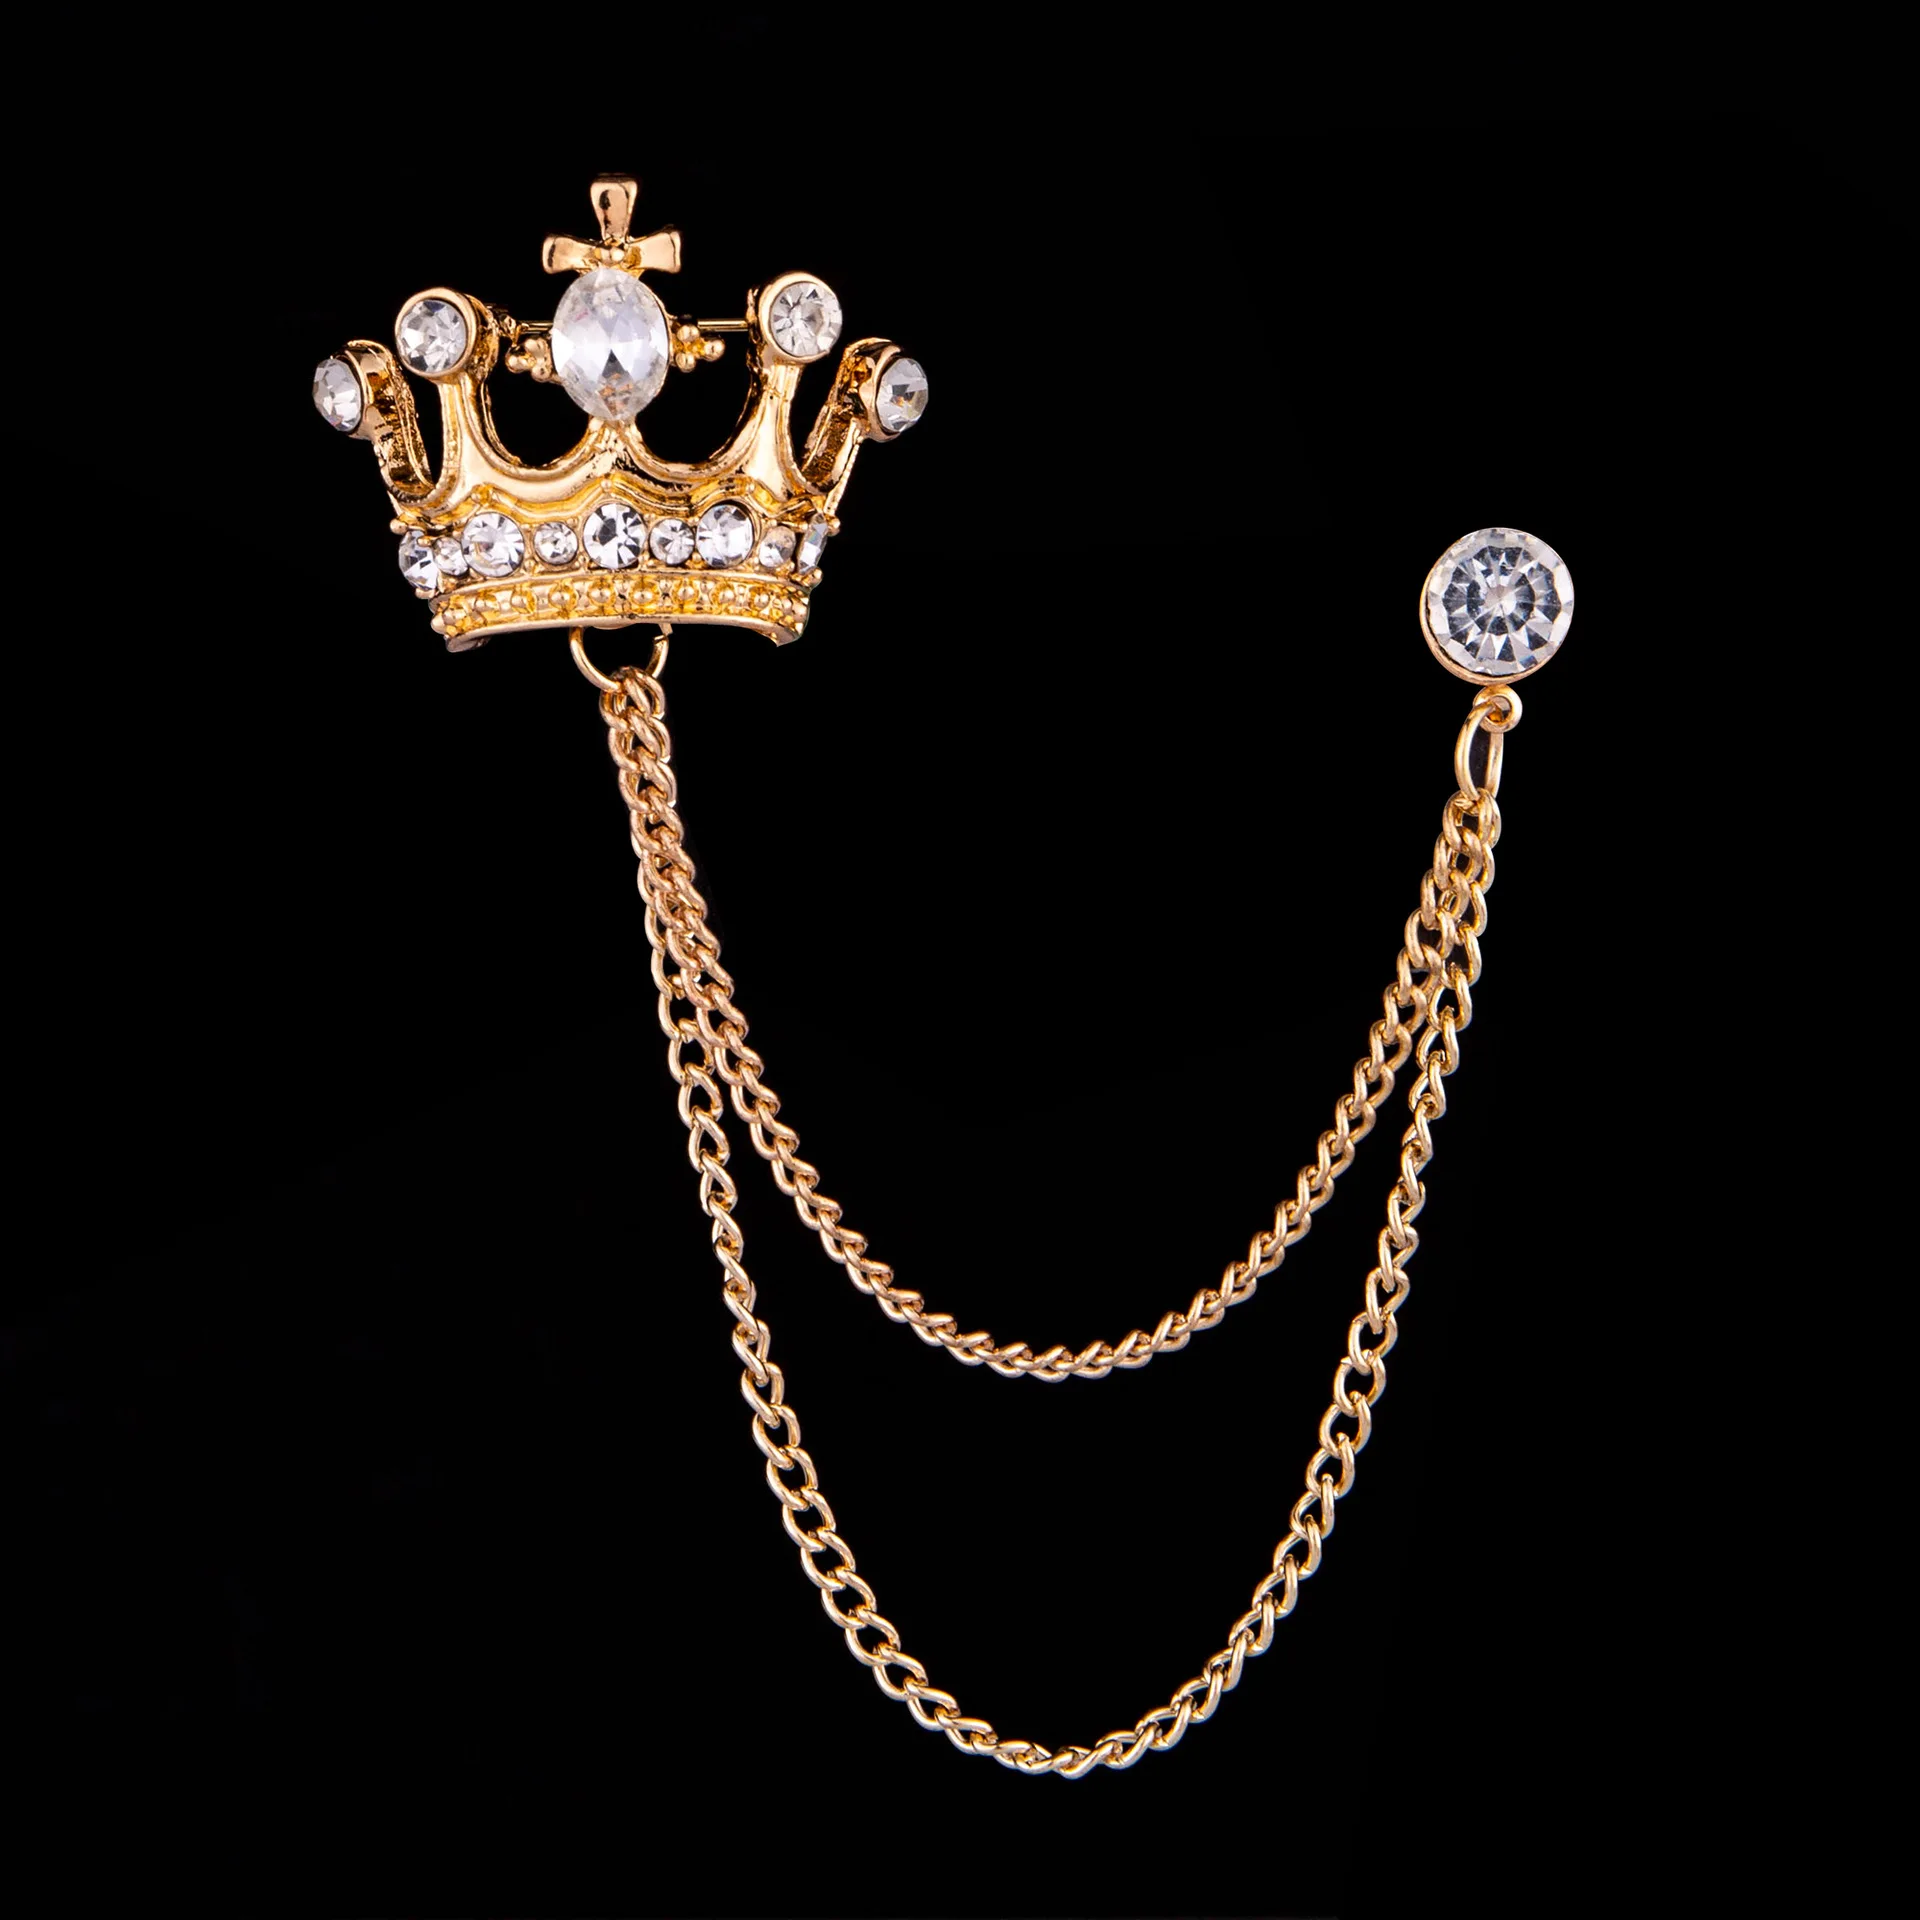 Высококачественная Ретро Мужская брошь с кисточкой винтажный британский стиль булавка Кристалл значок с изображением короны корсаж брошь для костюма воротник аксессуары